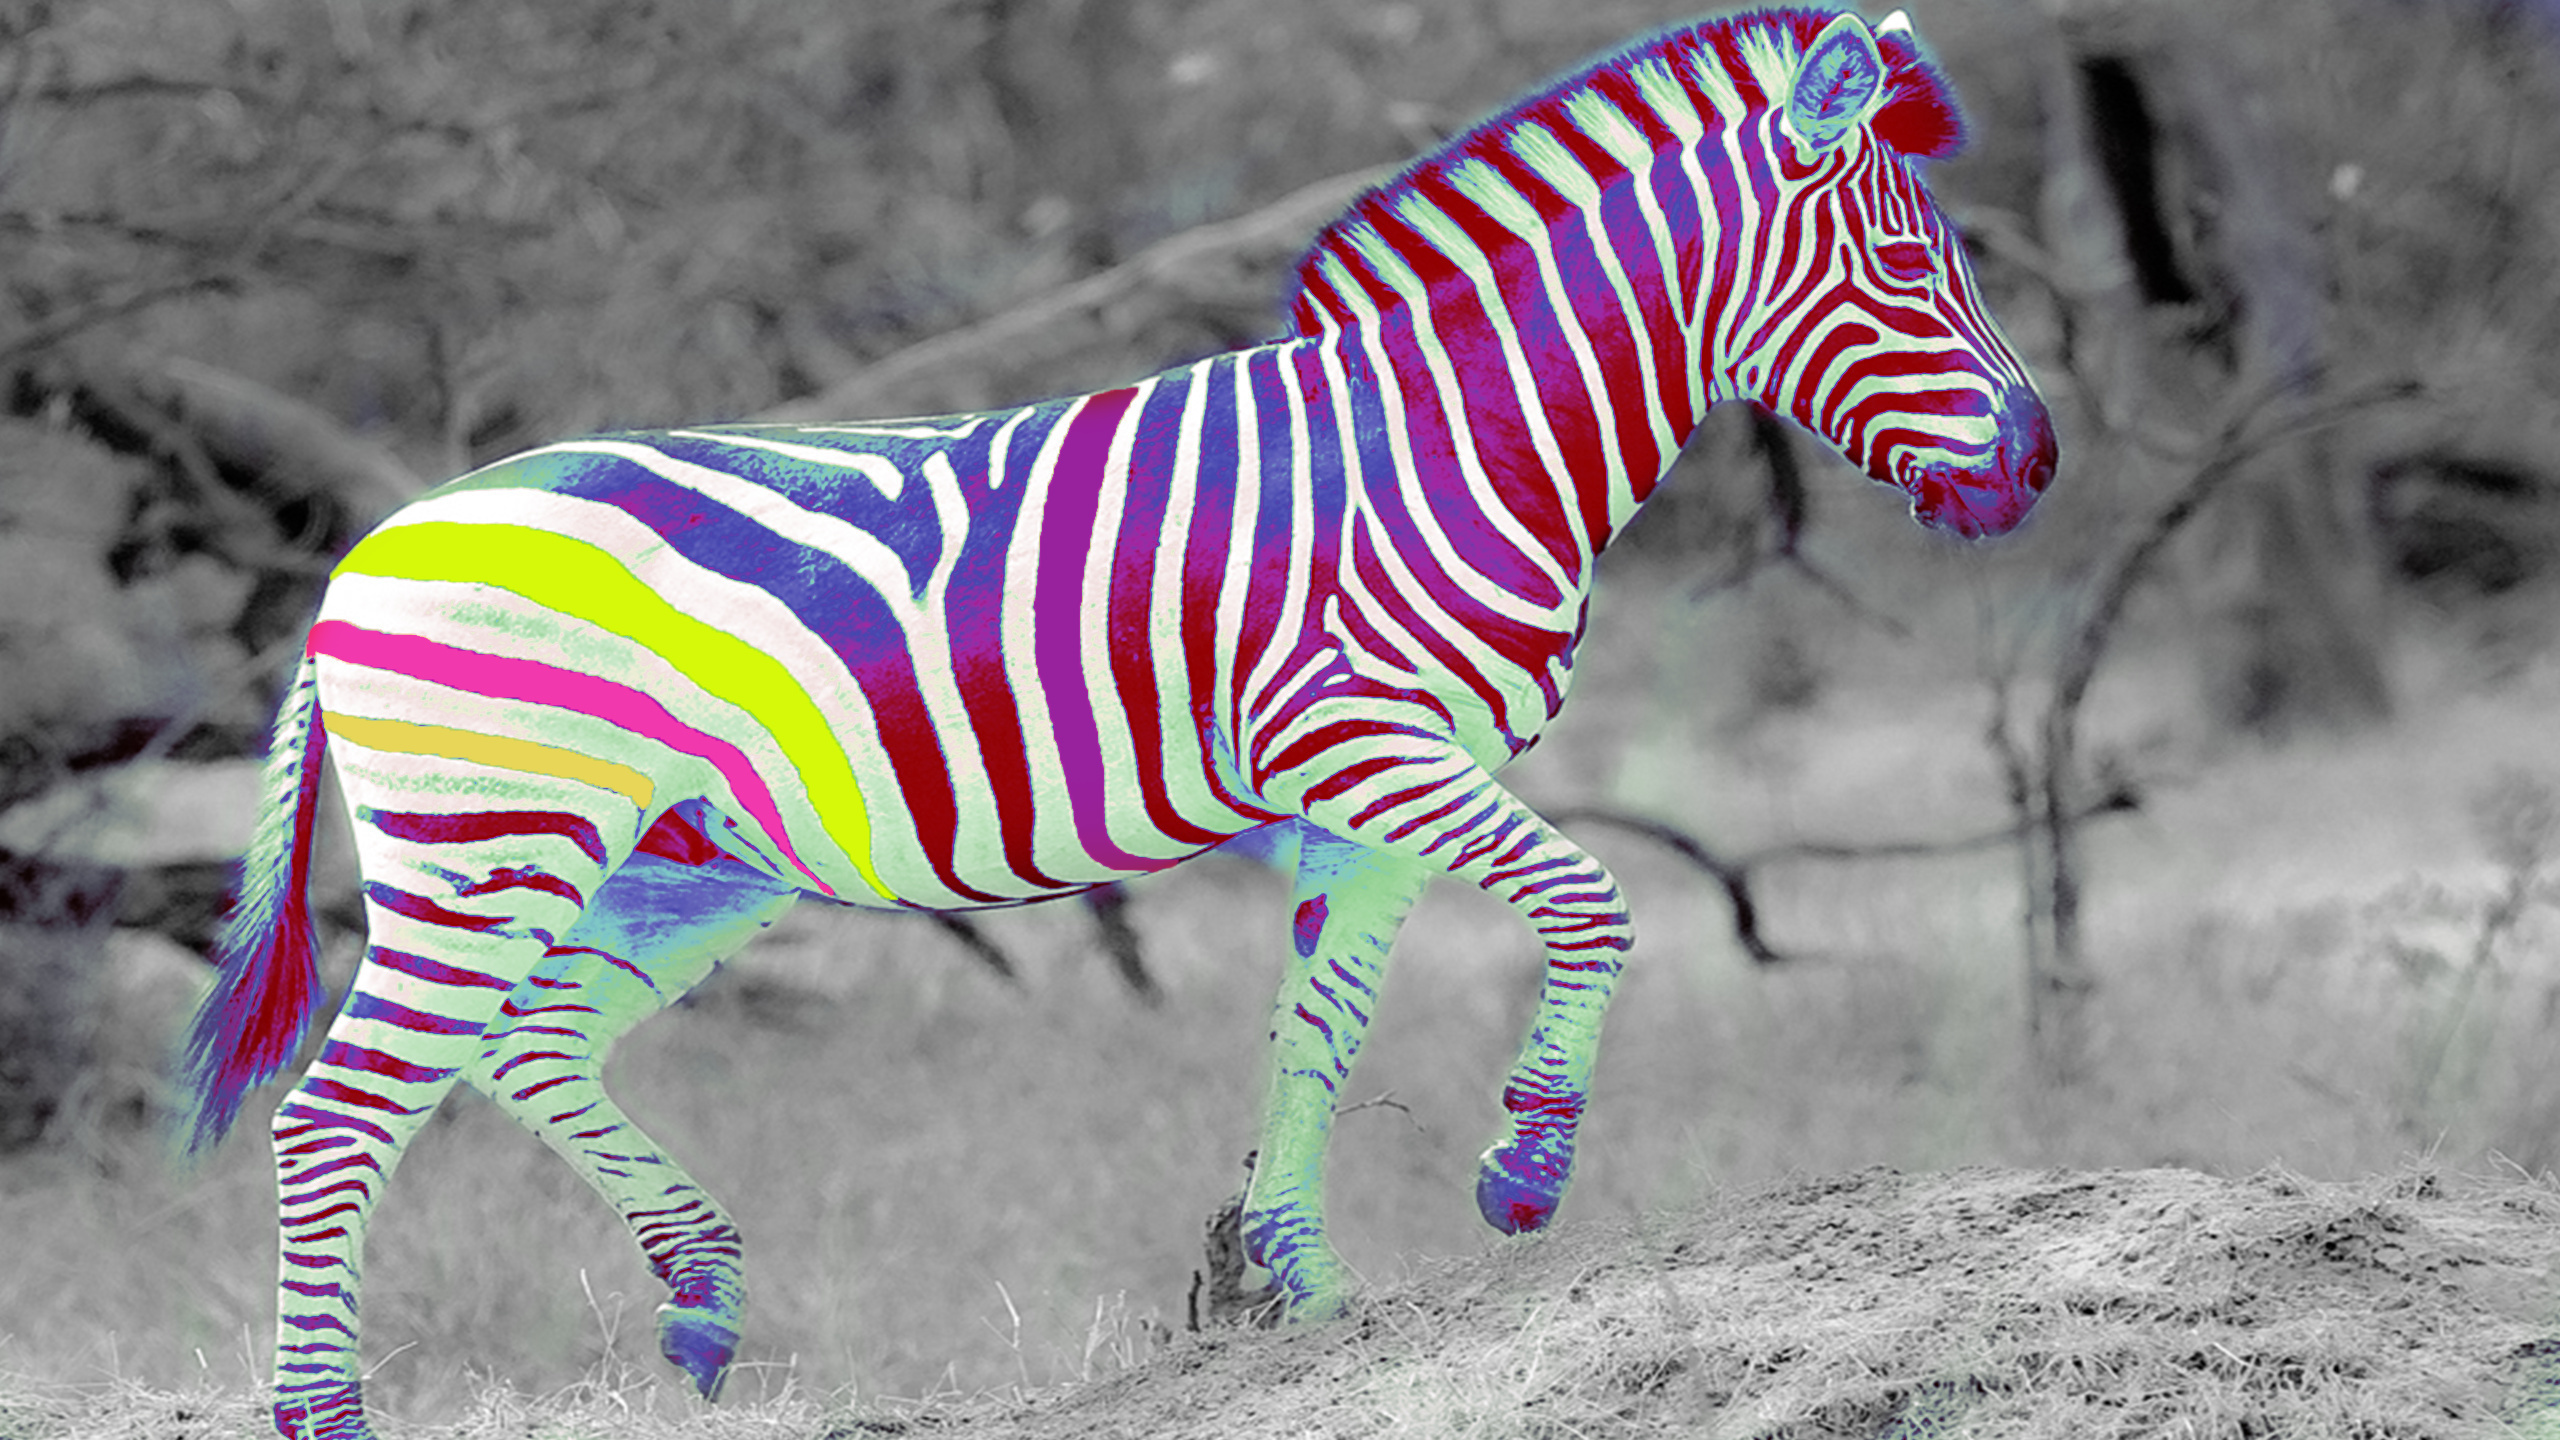 Zebra É Branca Ou Preta , HD Wallpaper & Backgrounds